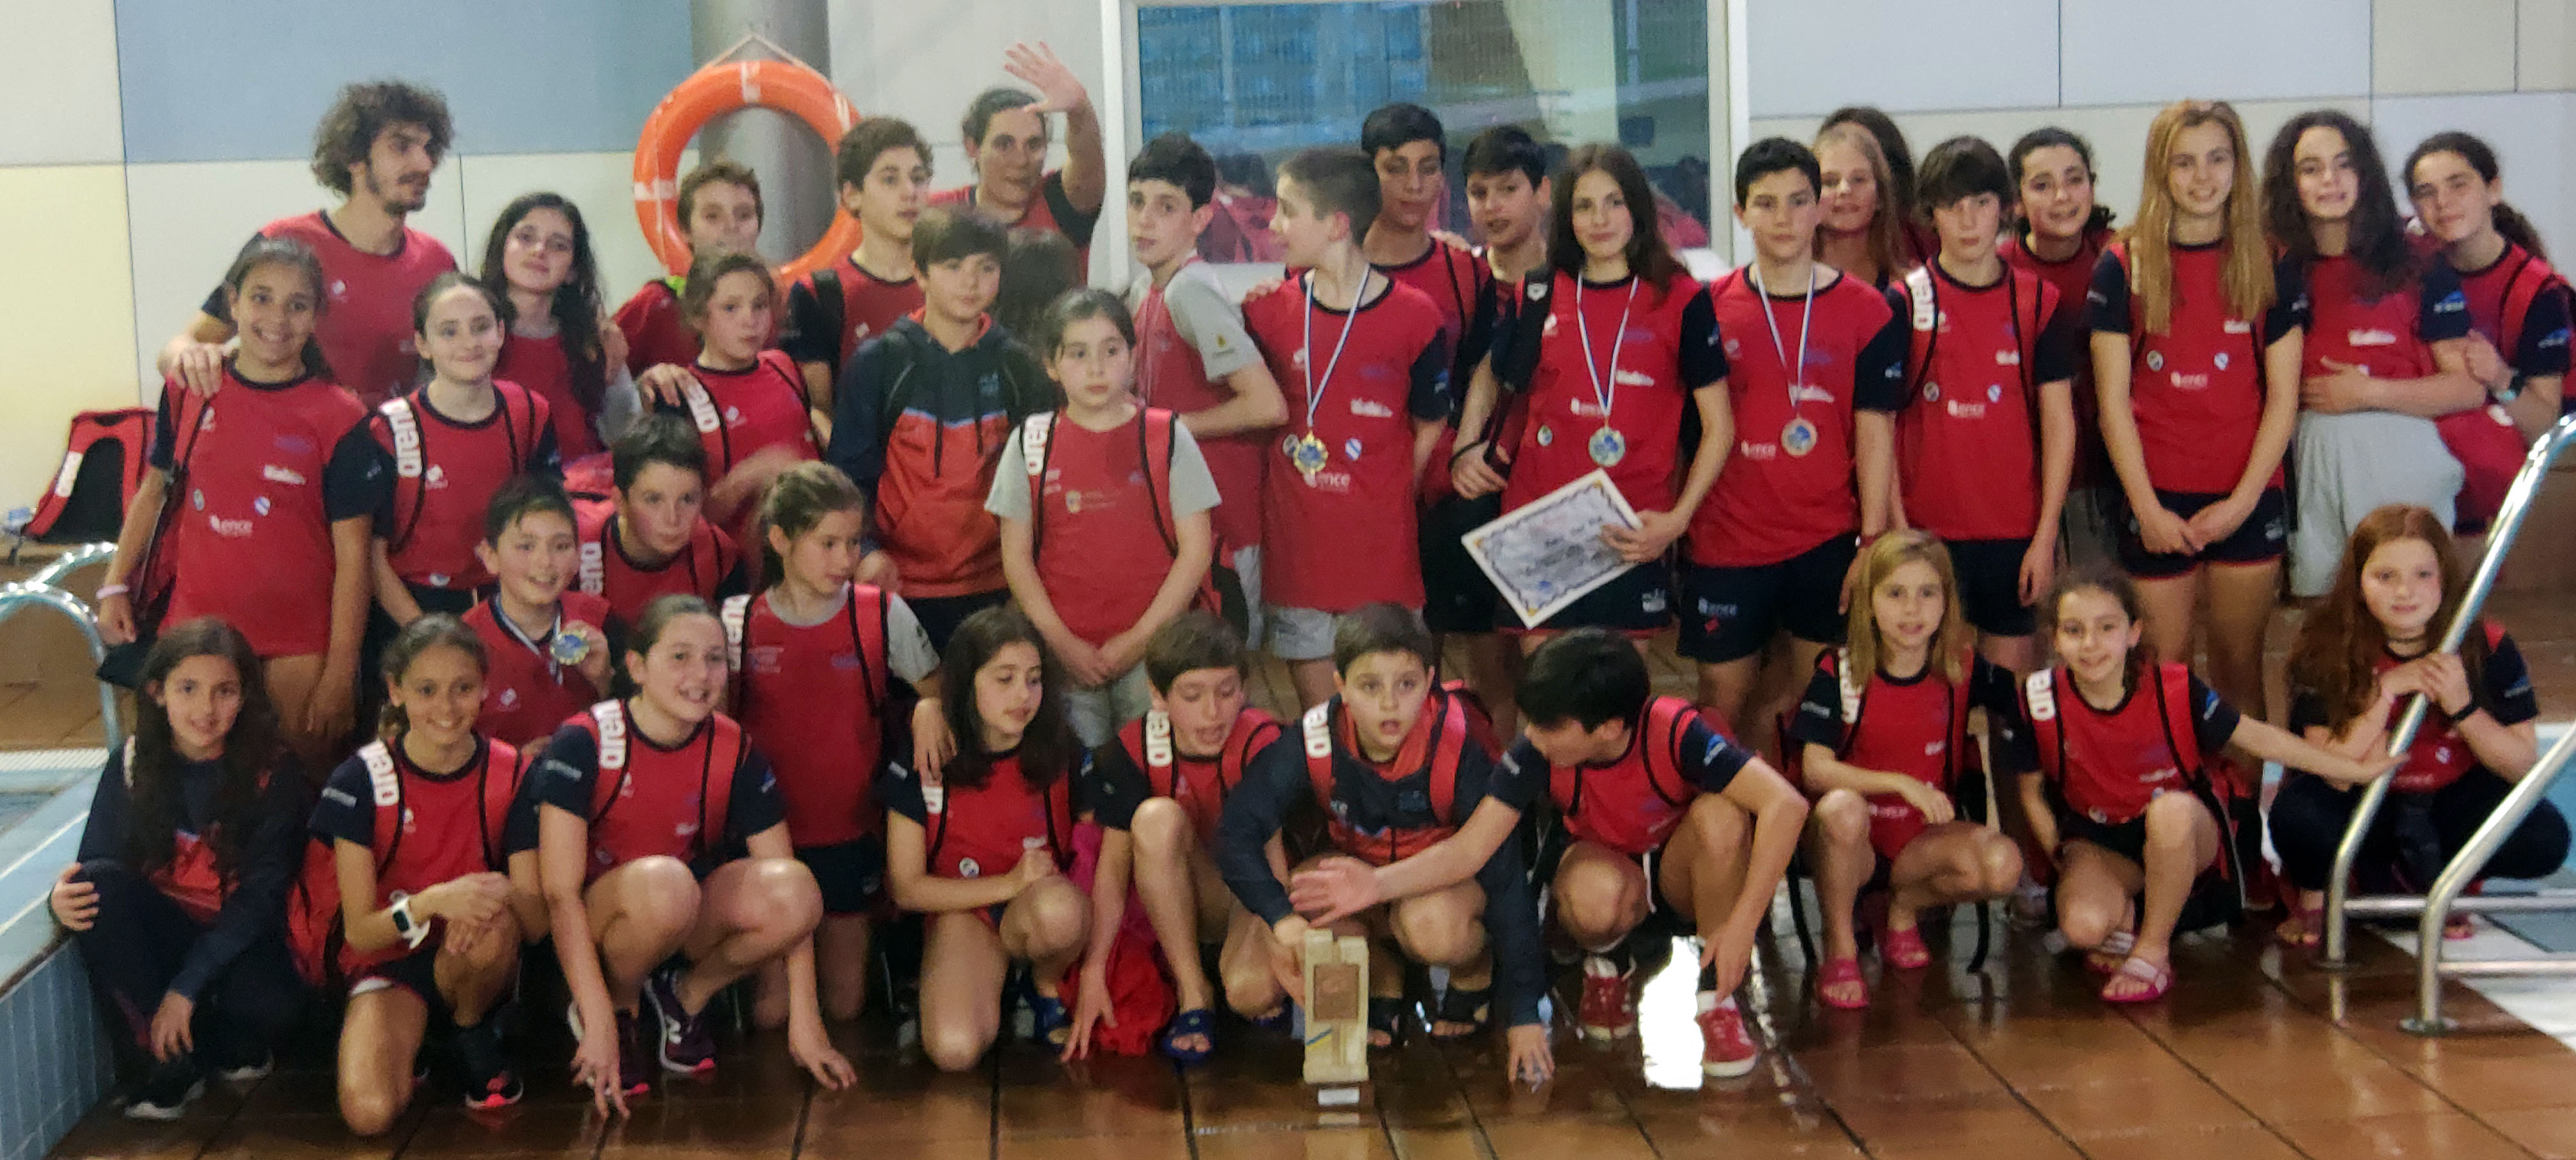 El Club Natación Galaico, tercero en el Trofeo de Avilés